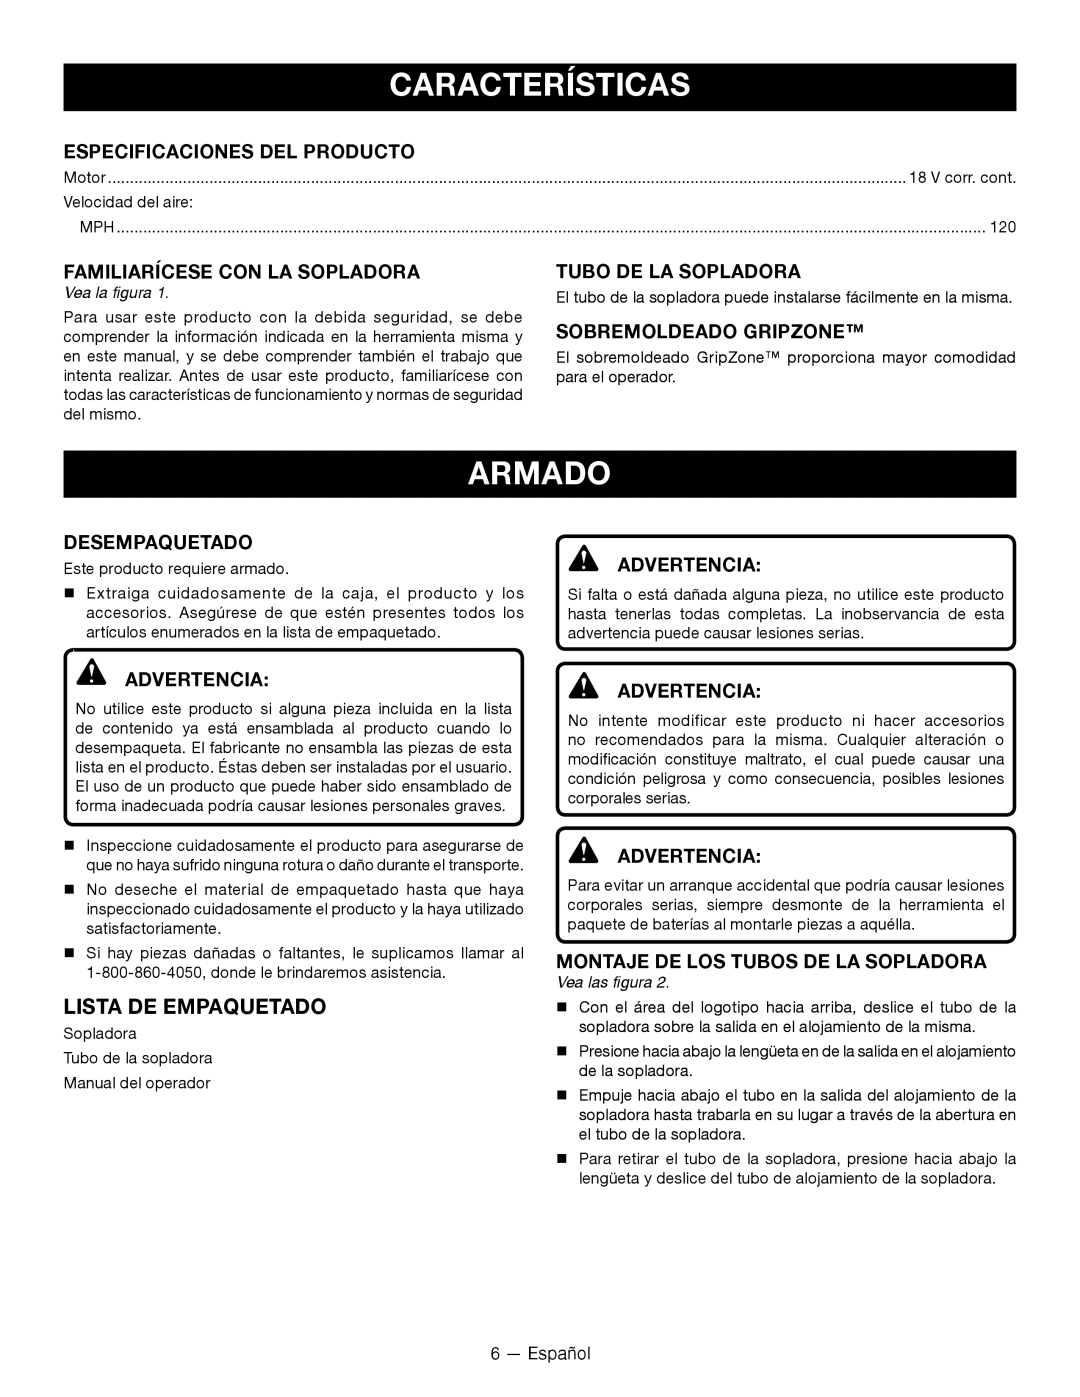 Ryobi P2105 manuel dutilisation Características, Armado, Lista De Empaquetado 